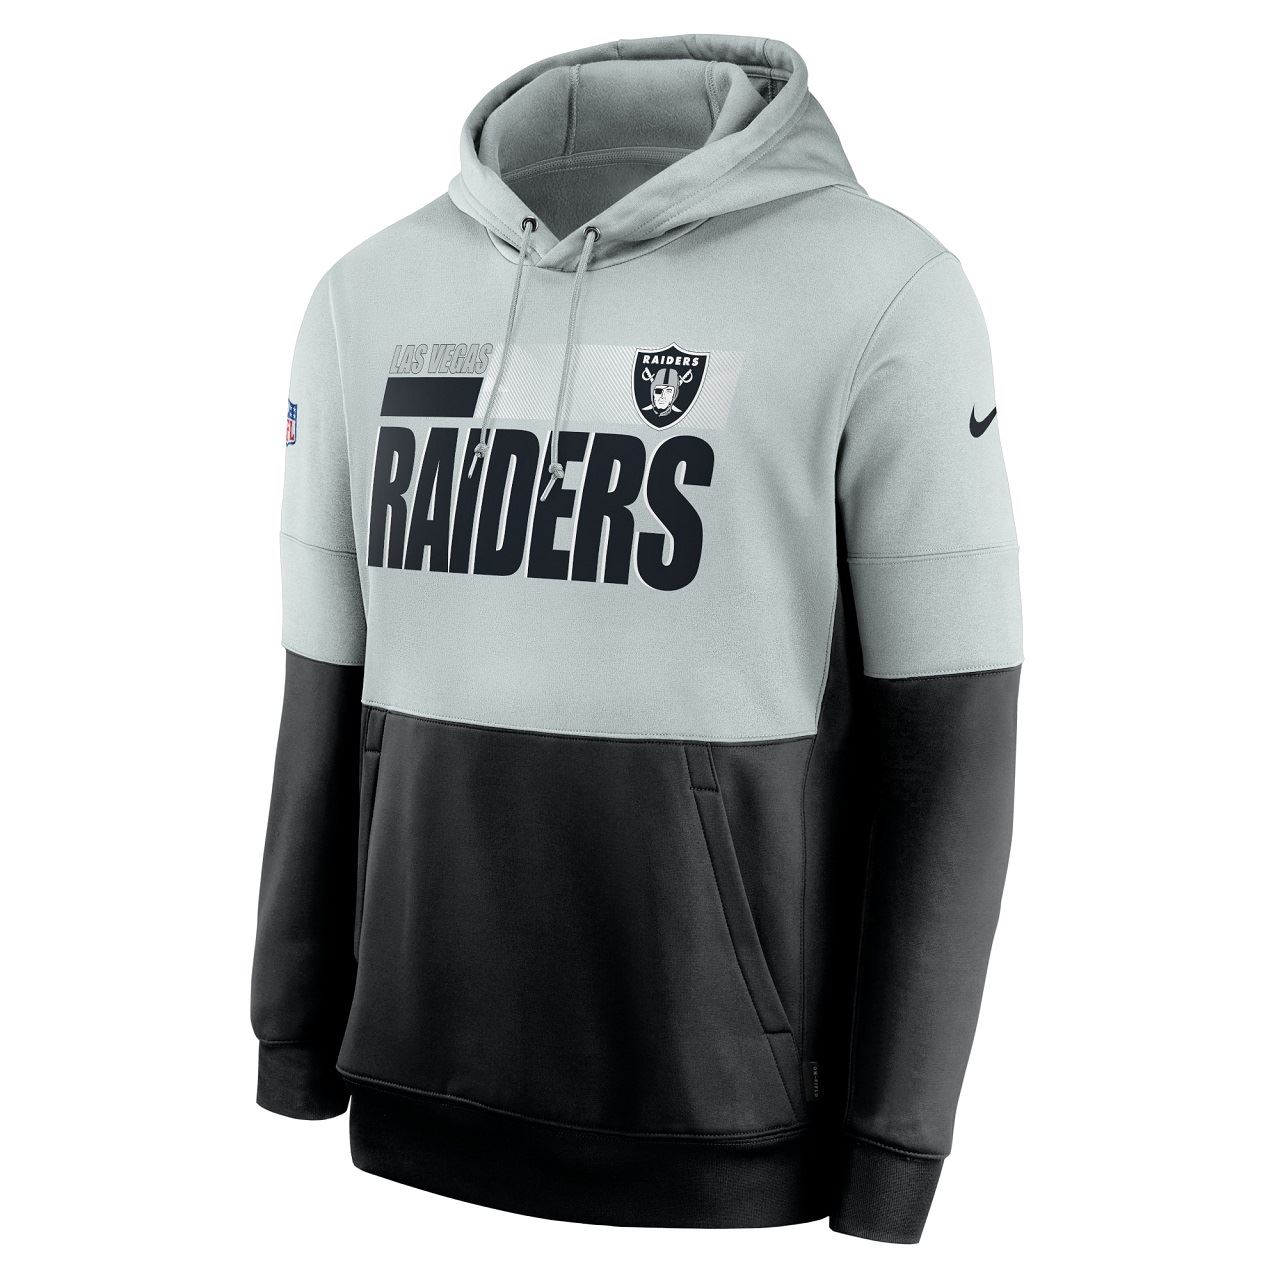 Las Vegas Raiders NFL Team Name Lockup Therma Pullover Field Silver / Black Hoody Nike